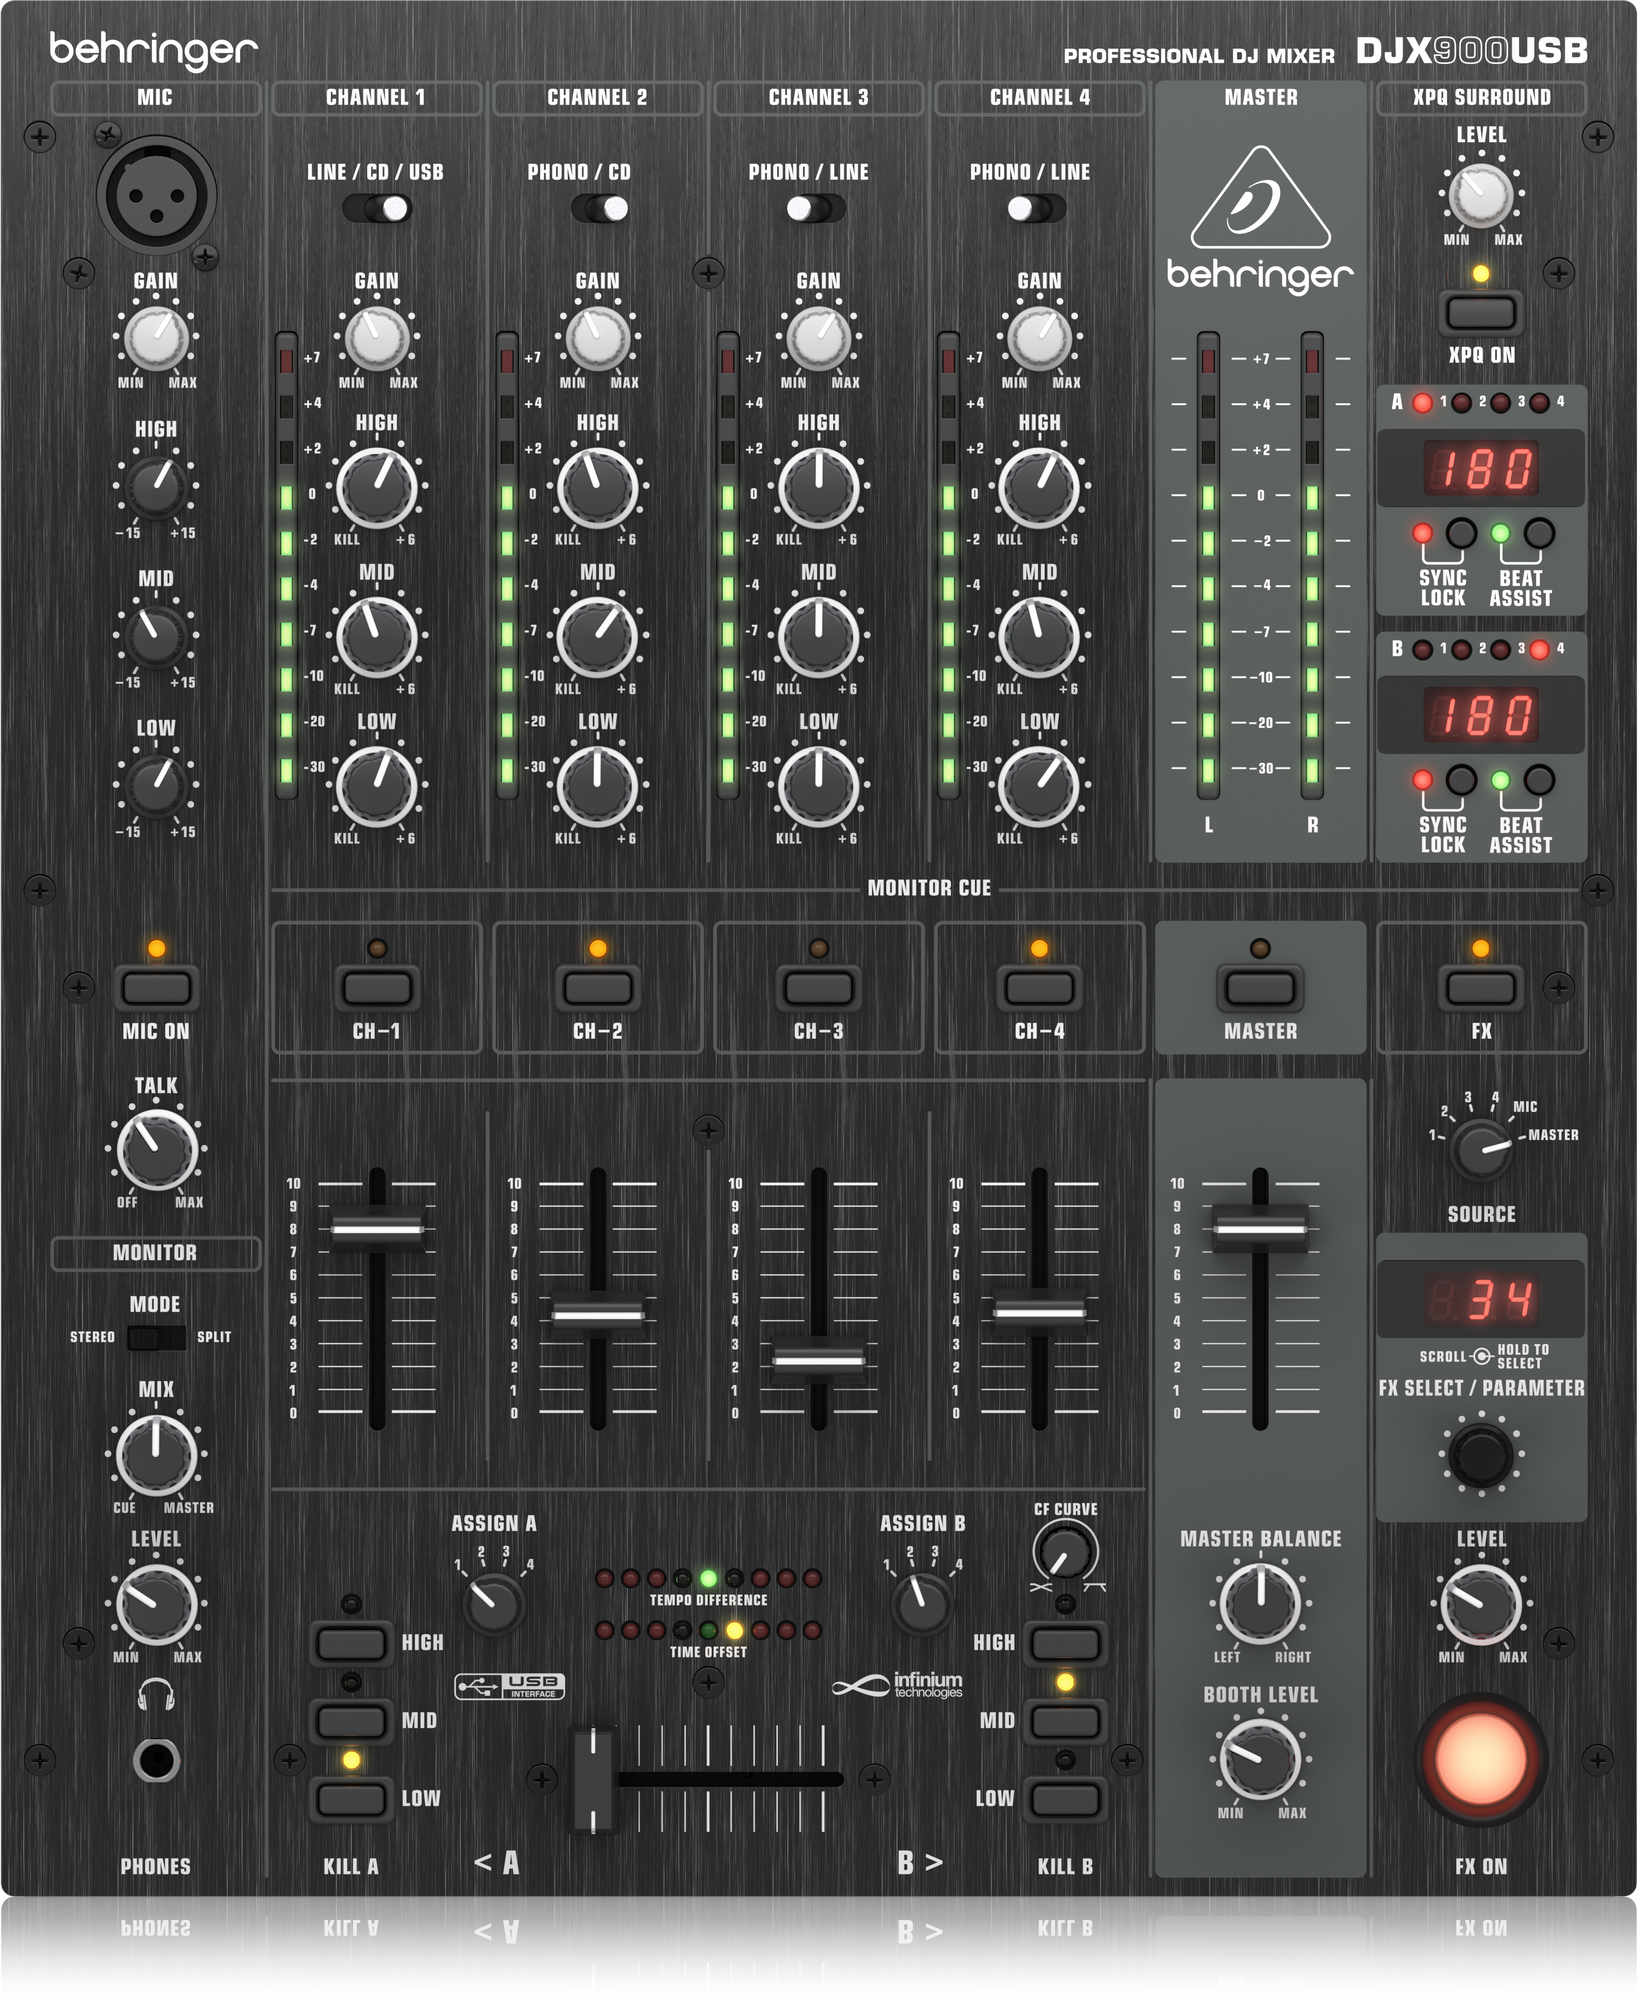 Pro Mixer DJX900USB 4-channel DJ Mixer